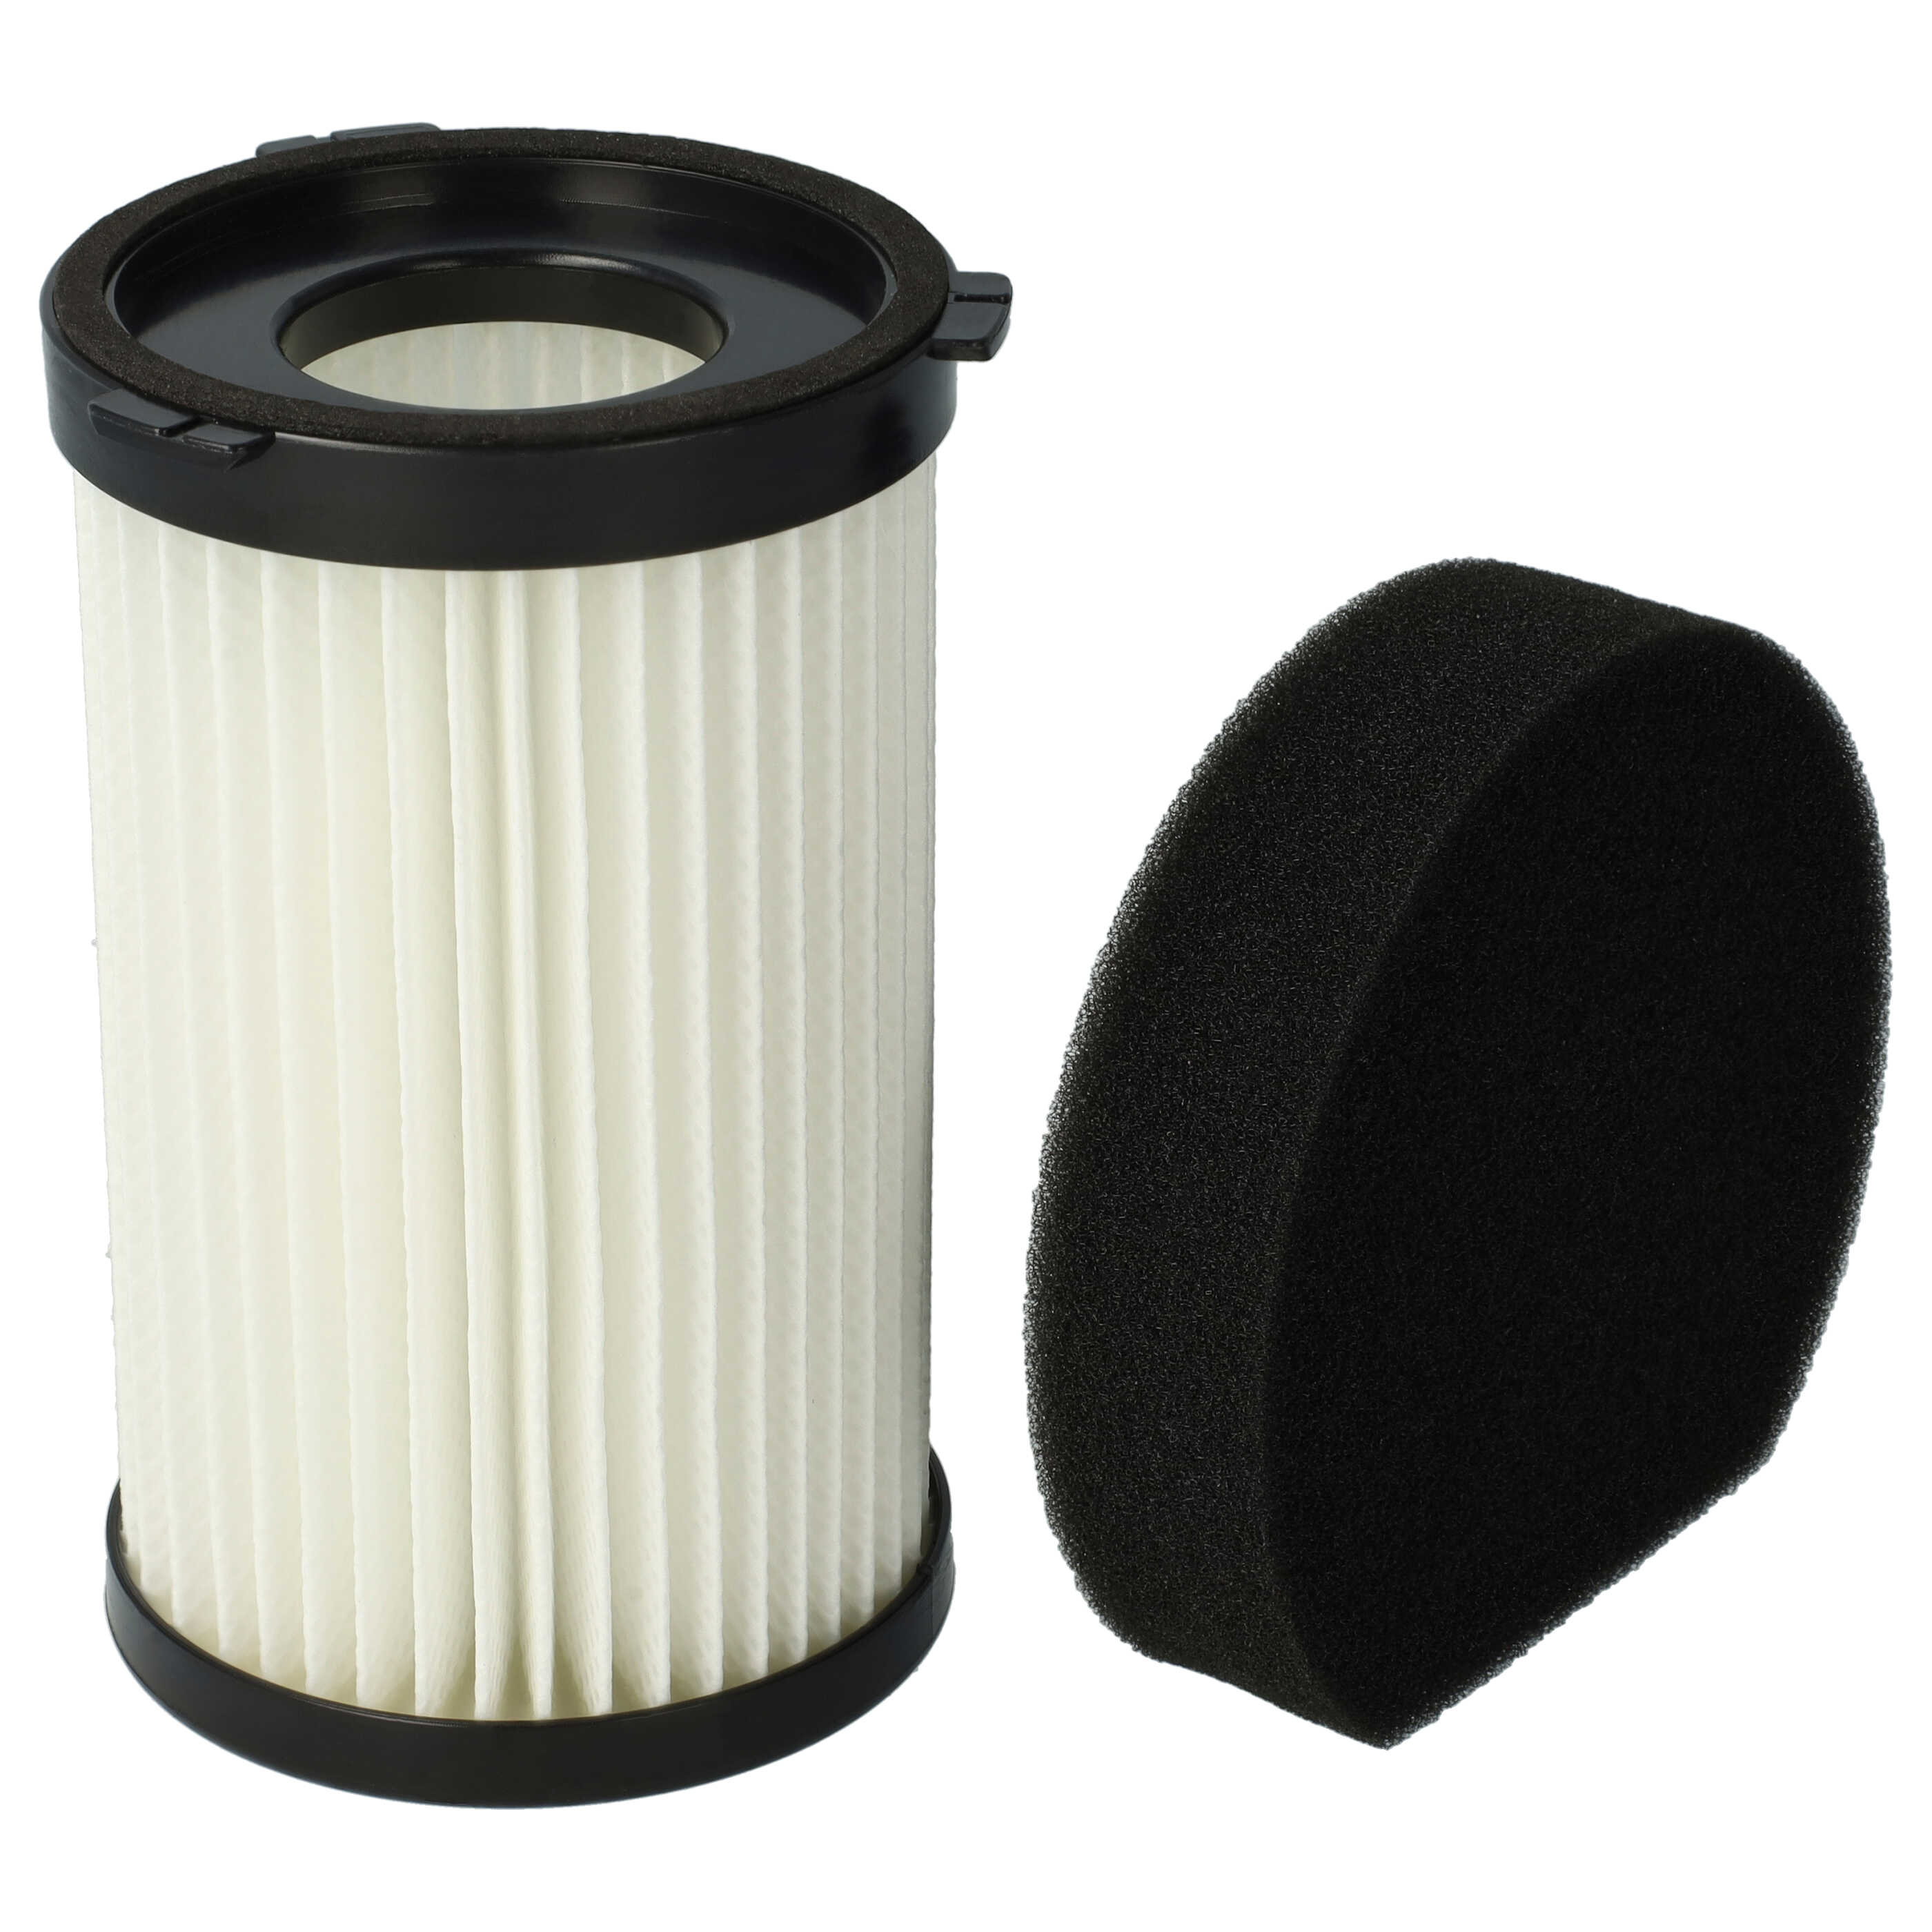 1x filter / sponge filter replaces Ariete AT5186038400 for Ariete Vacuum Cleaner